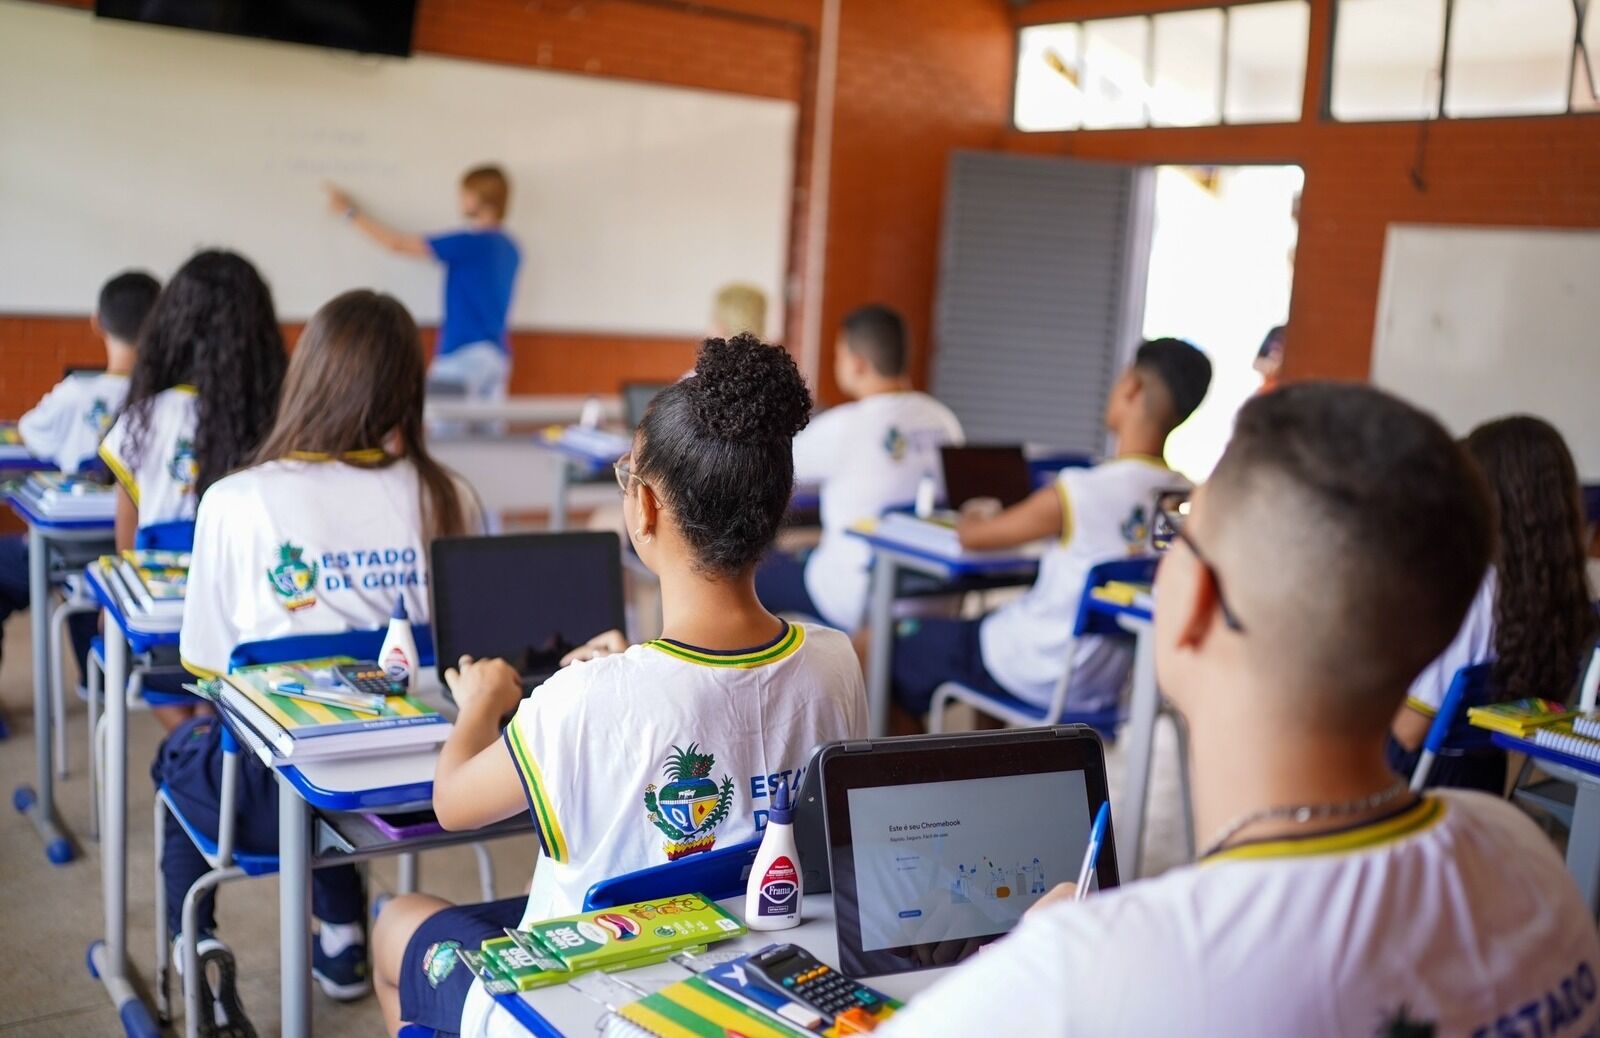 Censo Escolar: Rede estadual de ensino de Goiás é destaque em acessibilidade